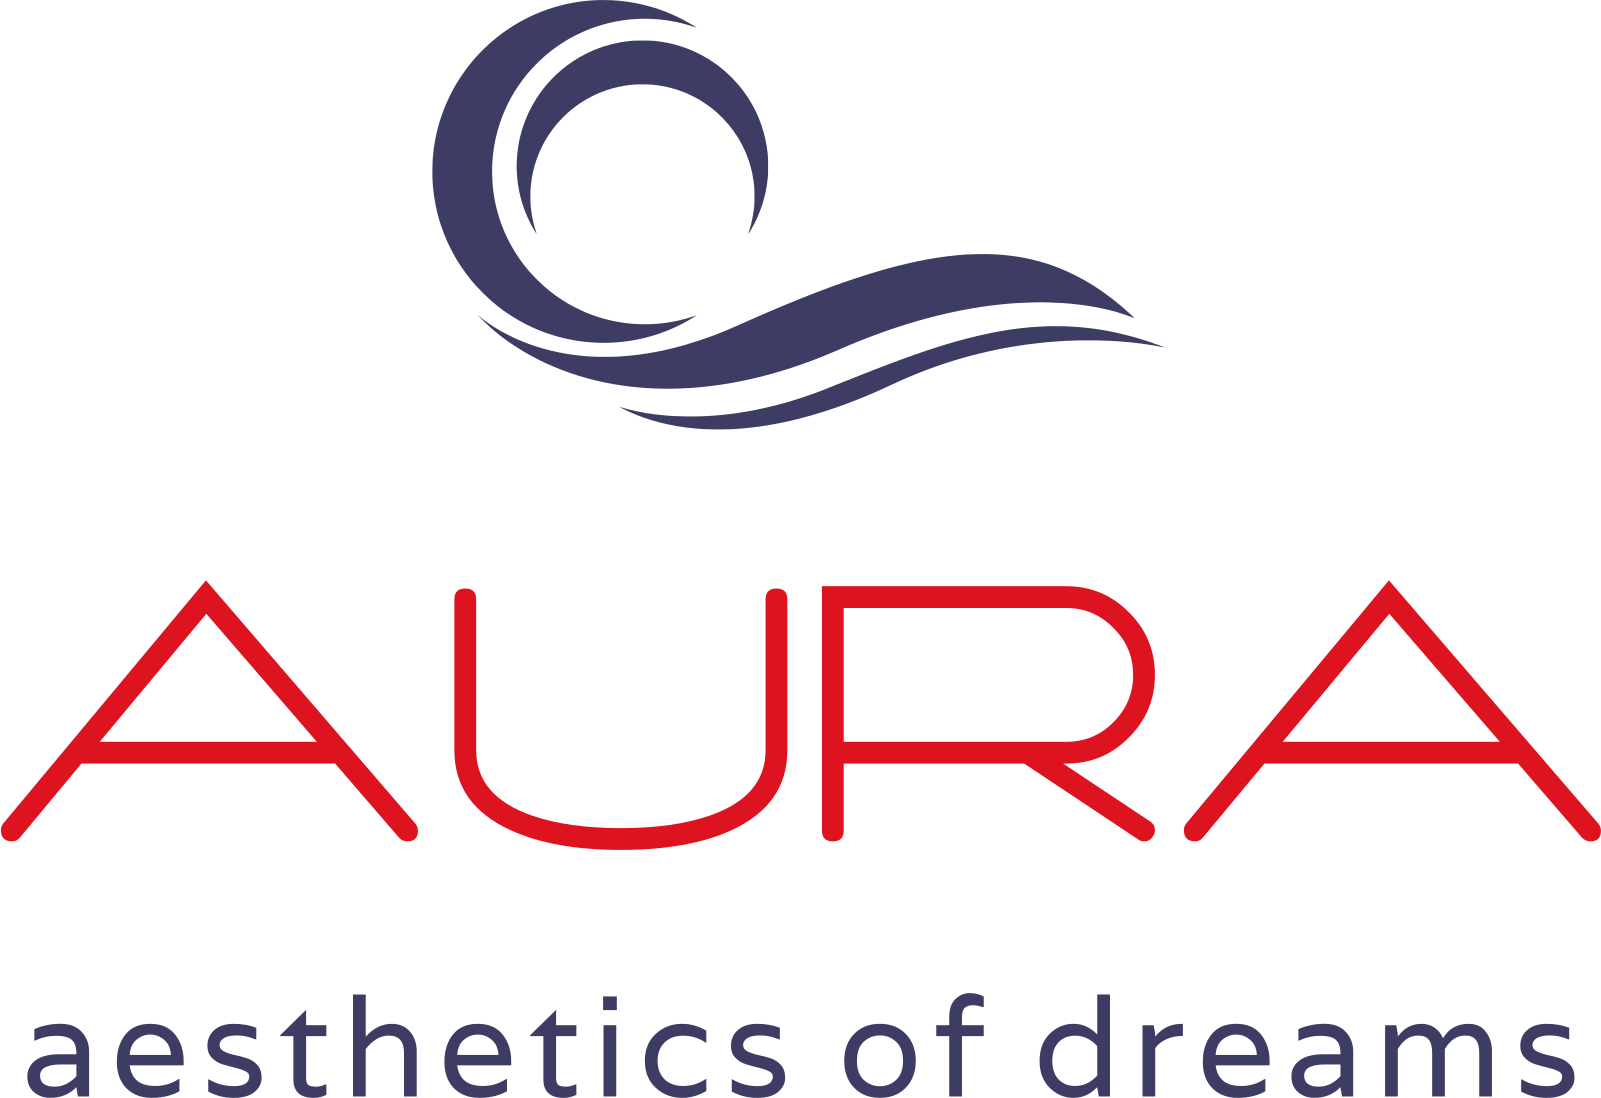 Aura mattress